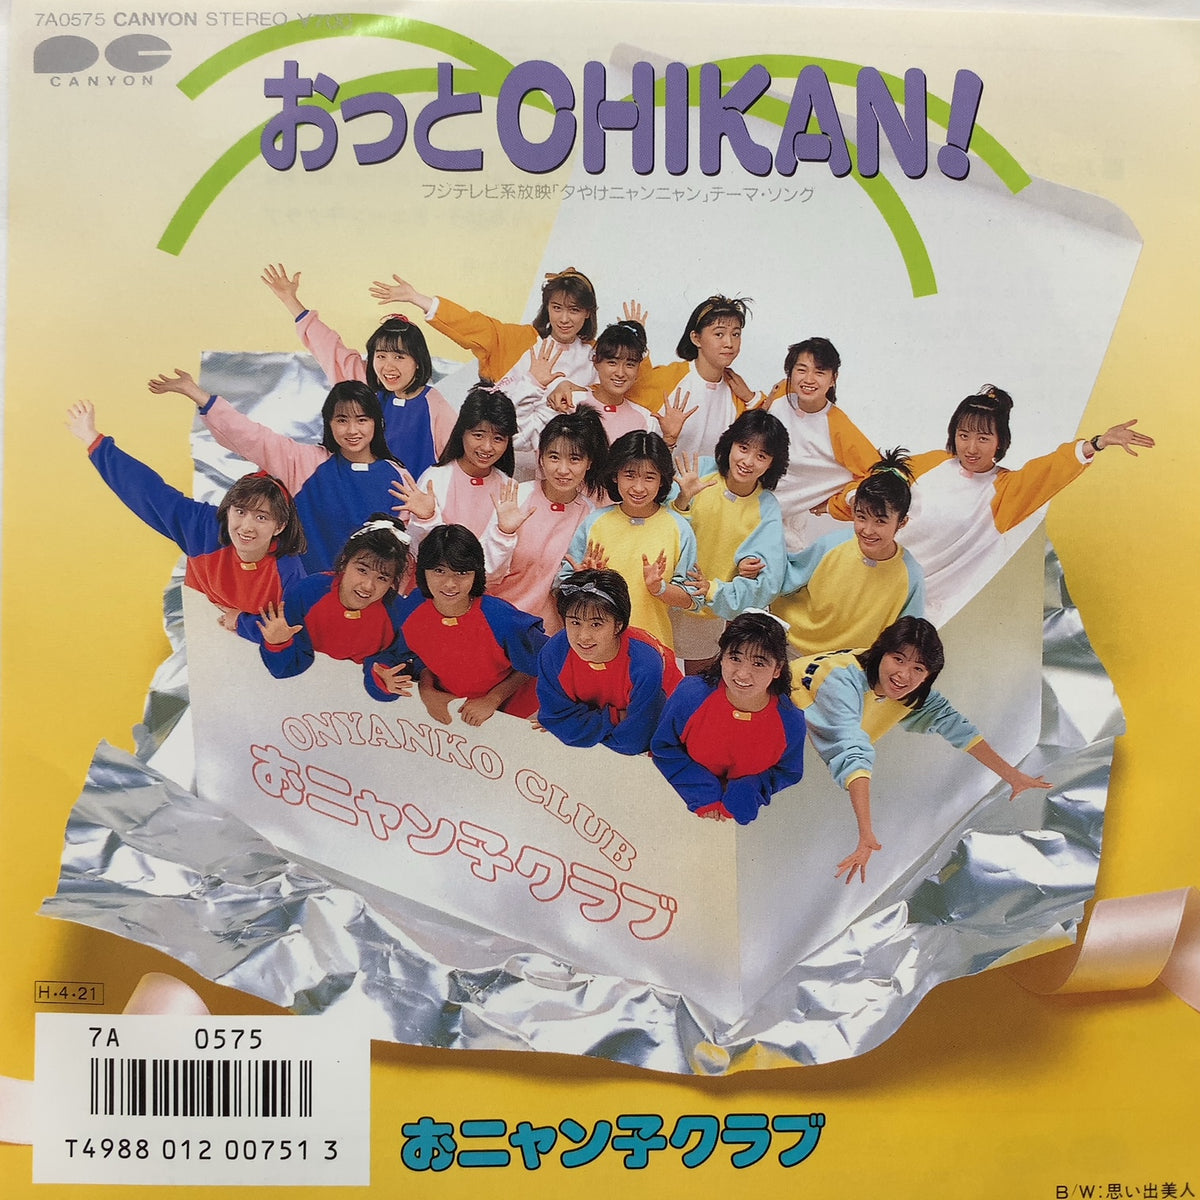 おニャン子クラブ おっとCHIKAN! レコード - 邦楽